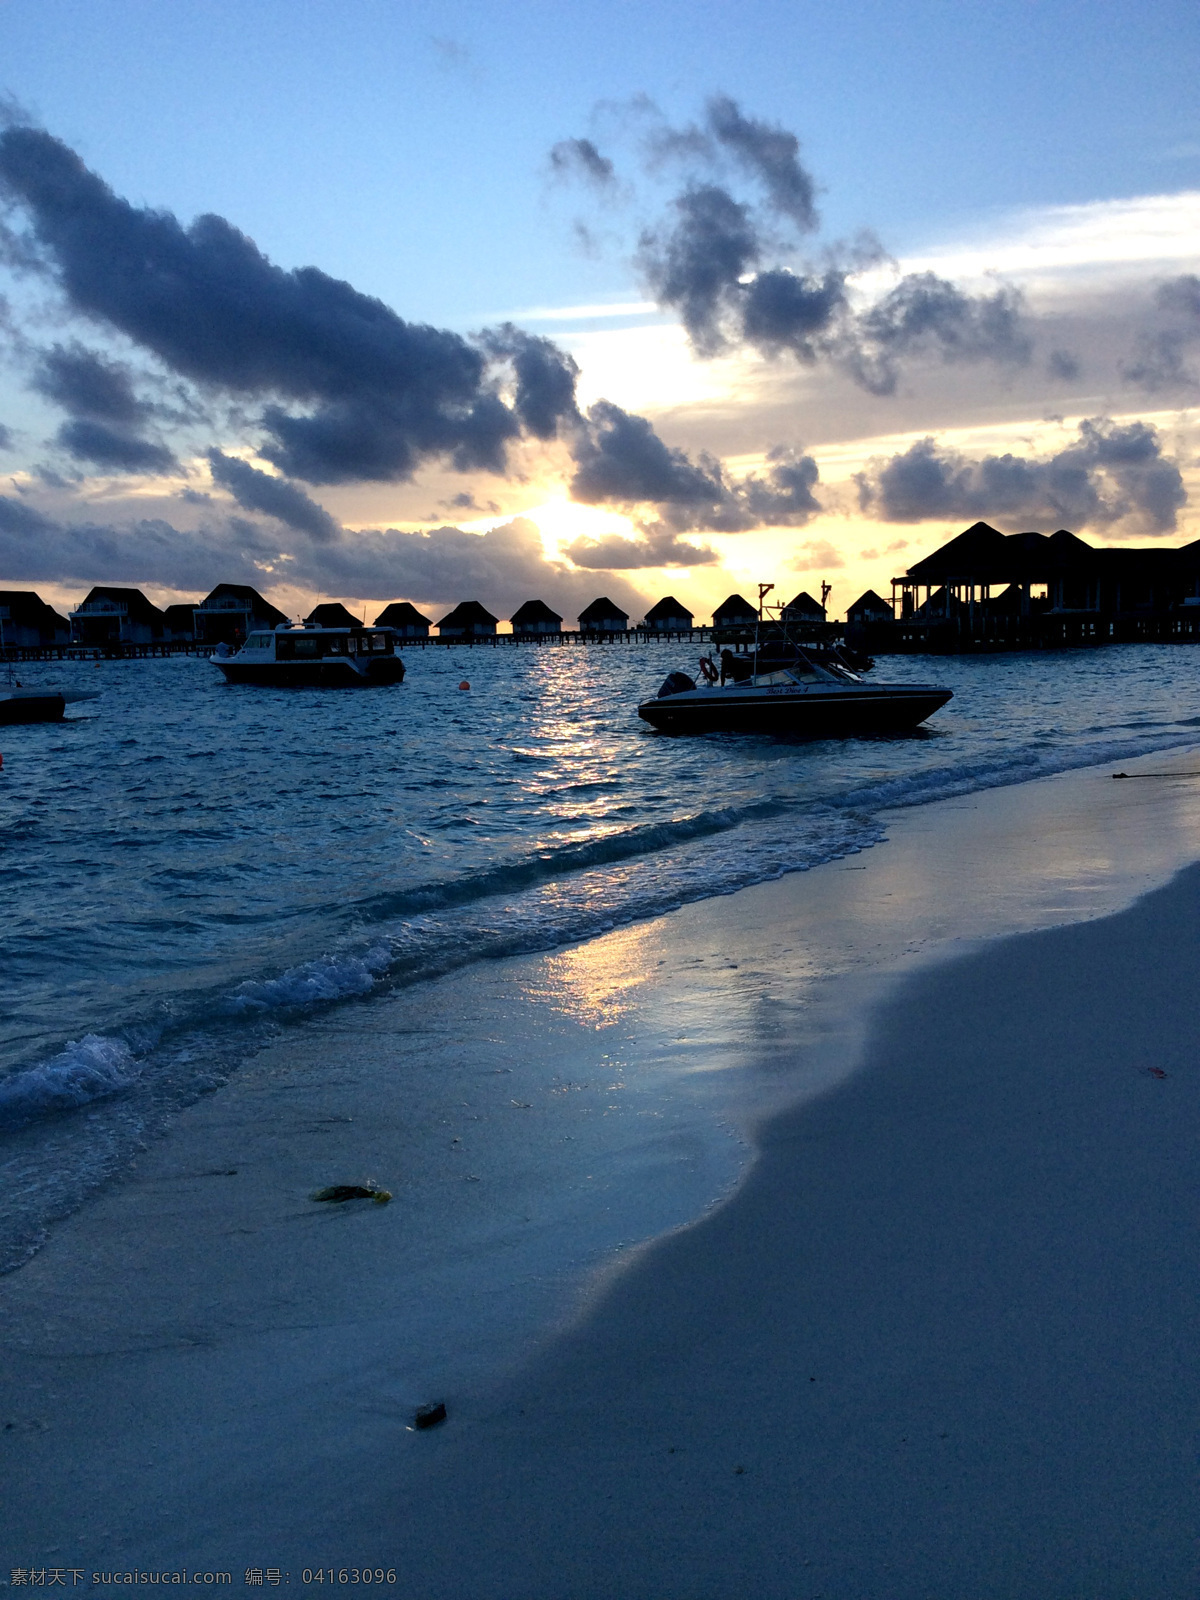 马尔代夫 马尔代夫沙滩 马尔代夫海滩 马尔代夫风光 蓝色 绿色 马尔代夫海景 天堂岛 海岛摄影 木桥 海景 旅游摄影 国外旅游